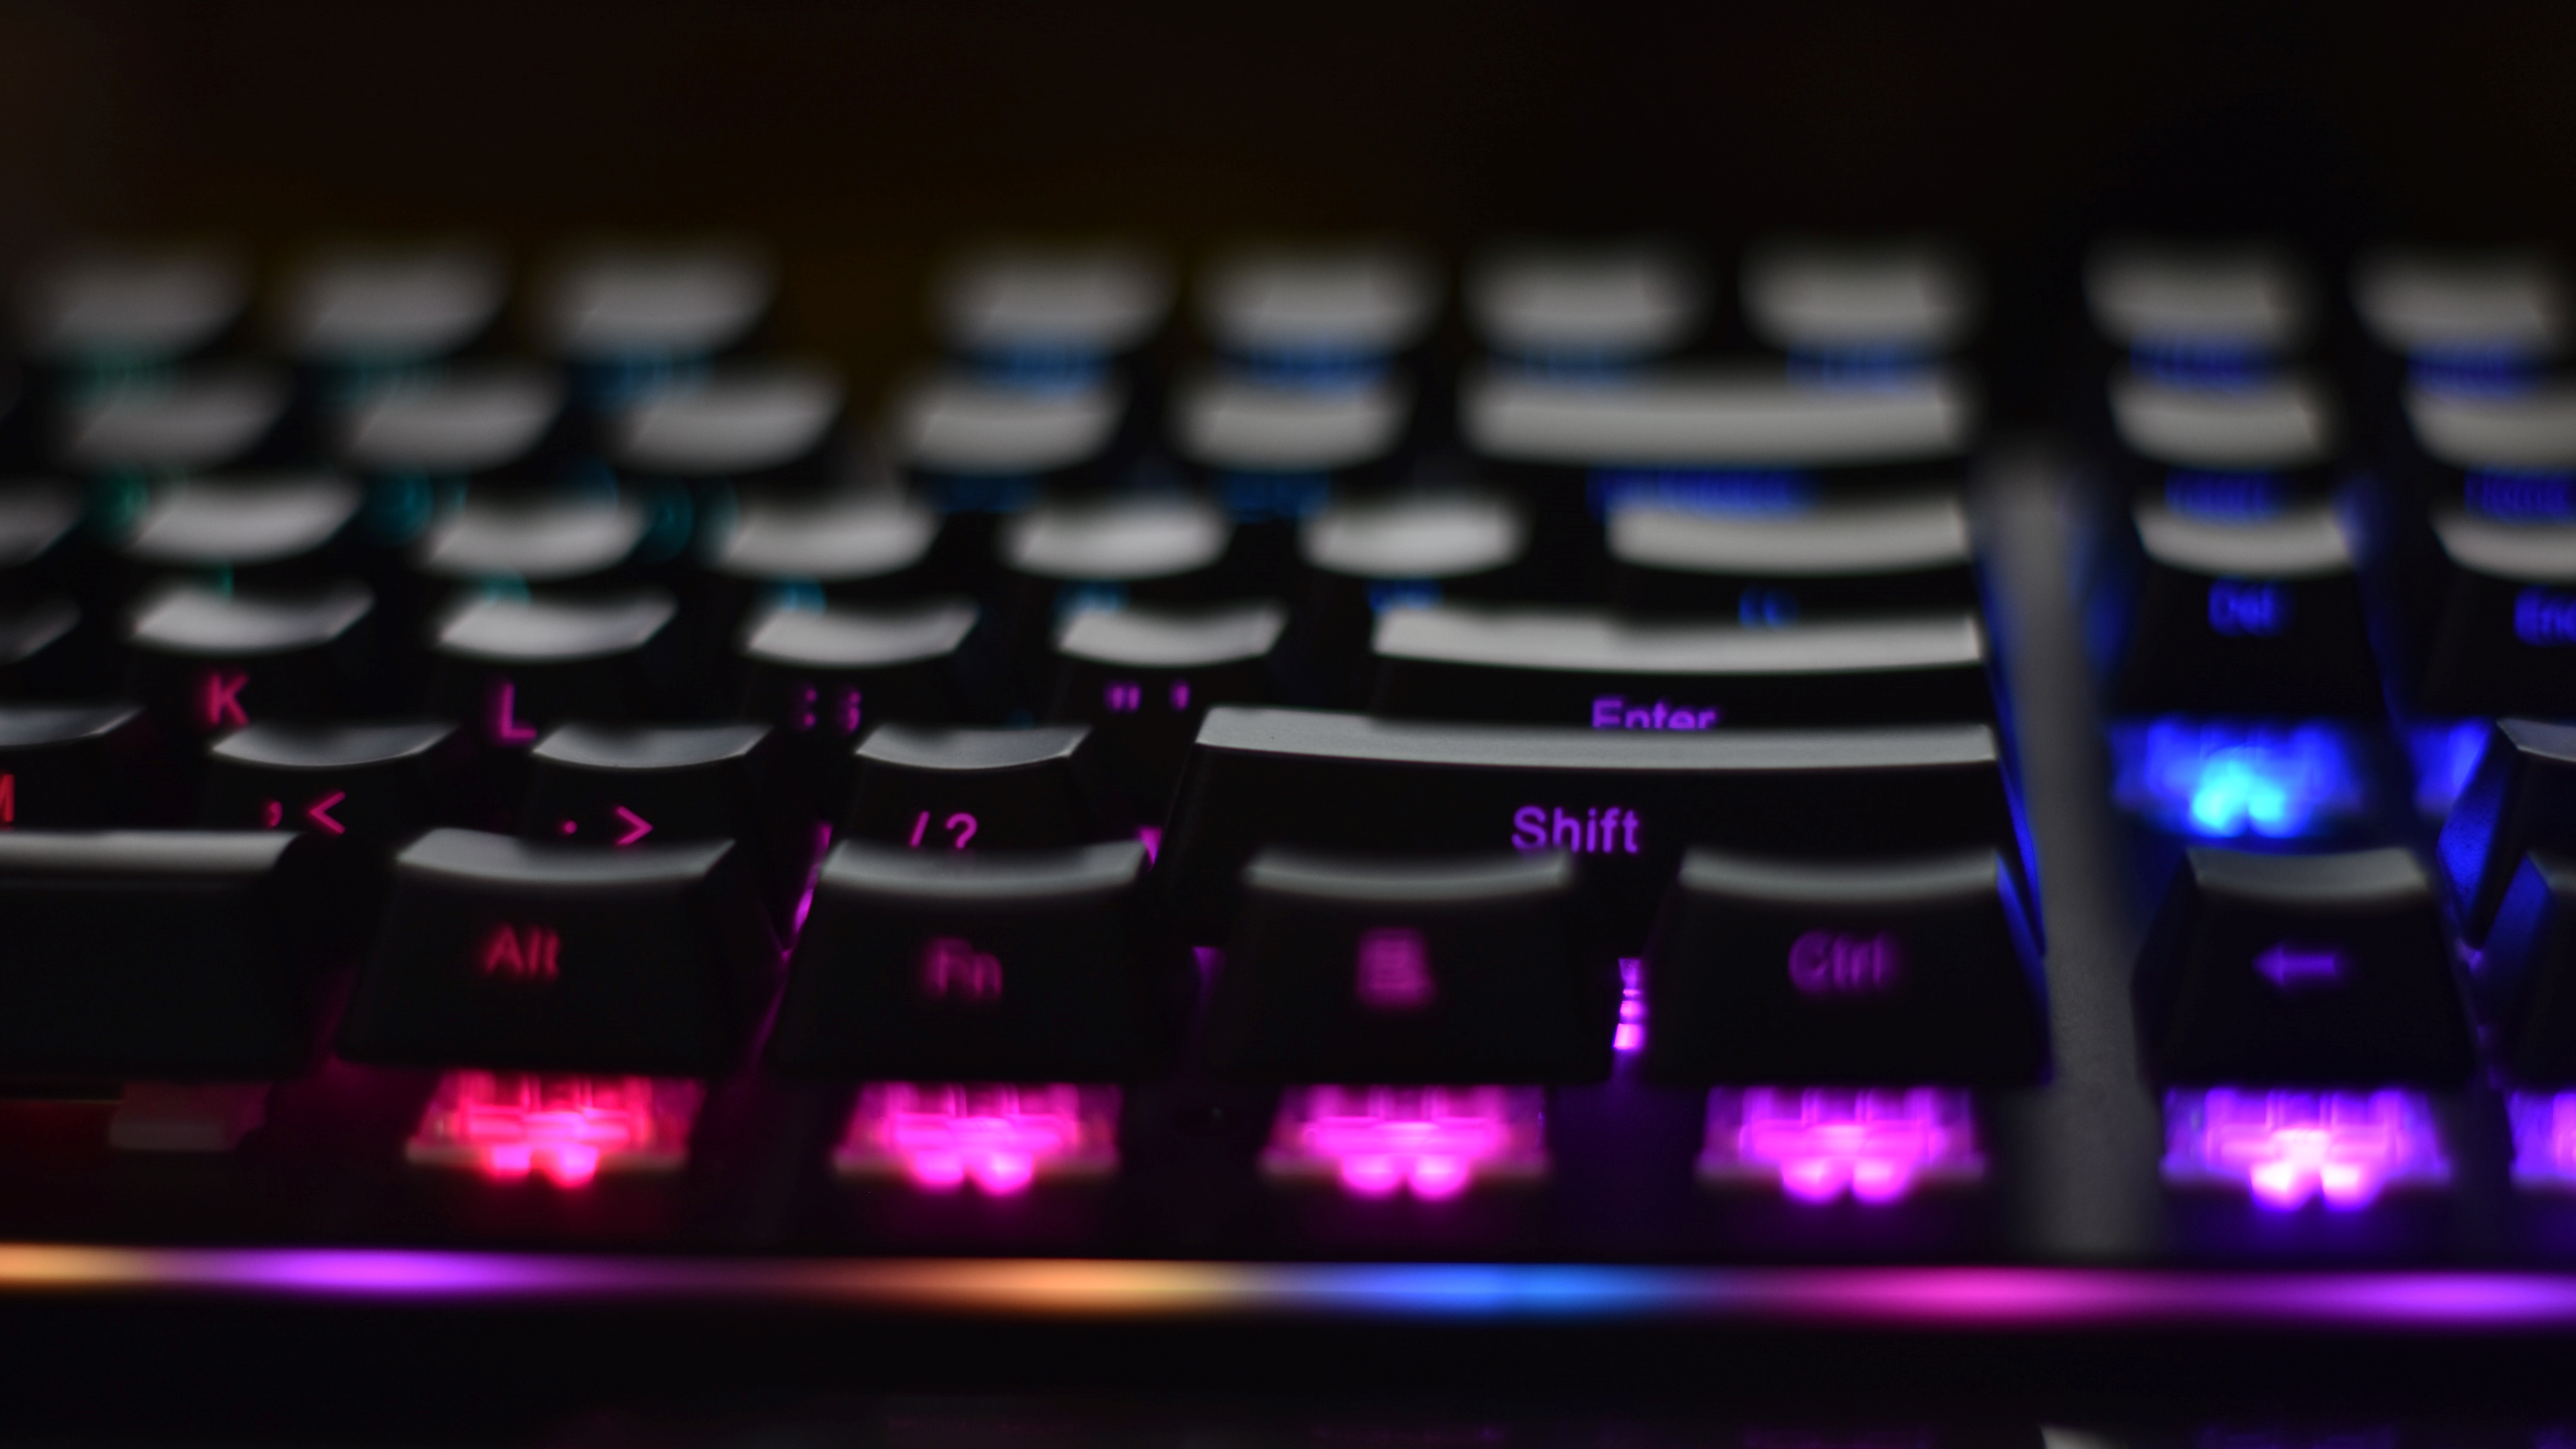 Teclado para PC, teclado mecânico de duas cores para jogos de digitação  para computadores